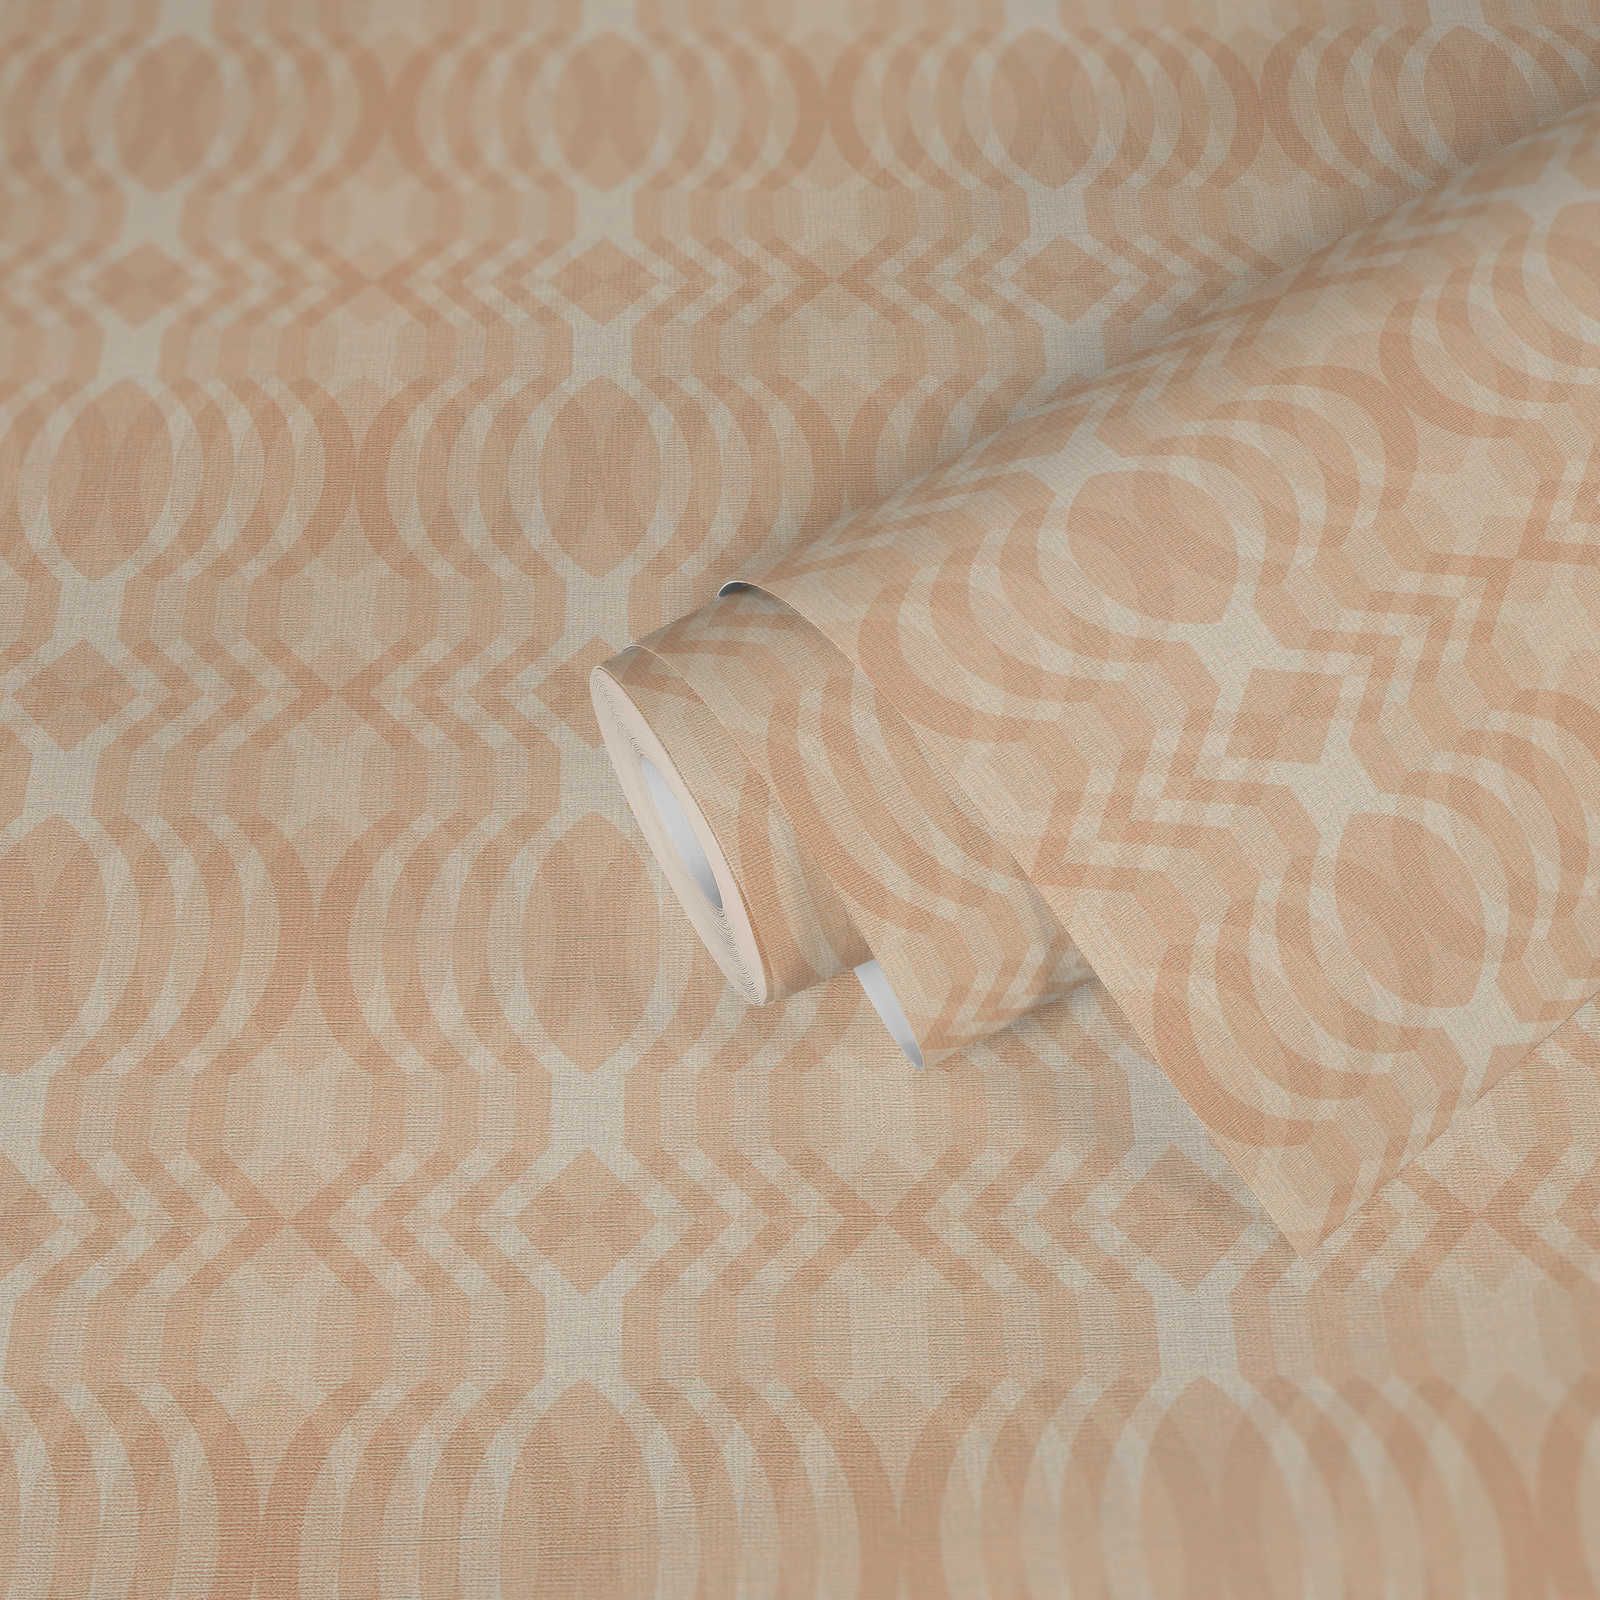             papier peint rétro légèrement structuré à motifs géométriques - beige, crème, blanc
        